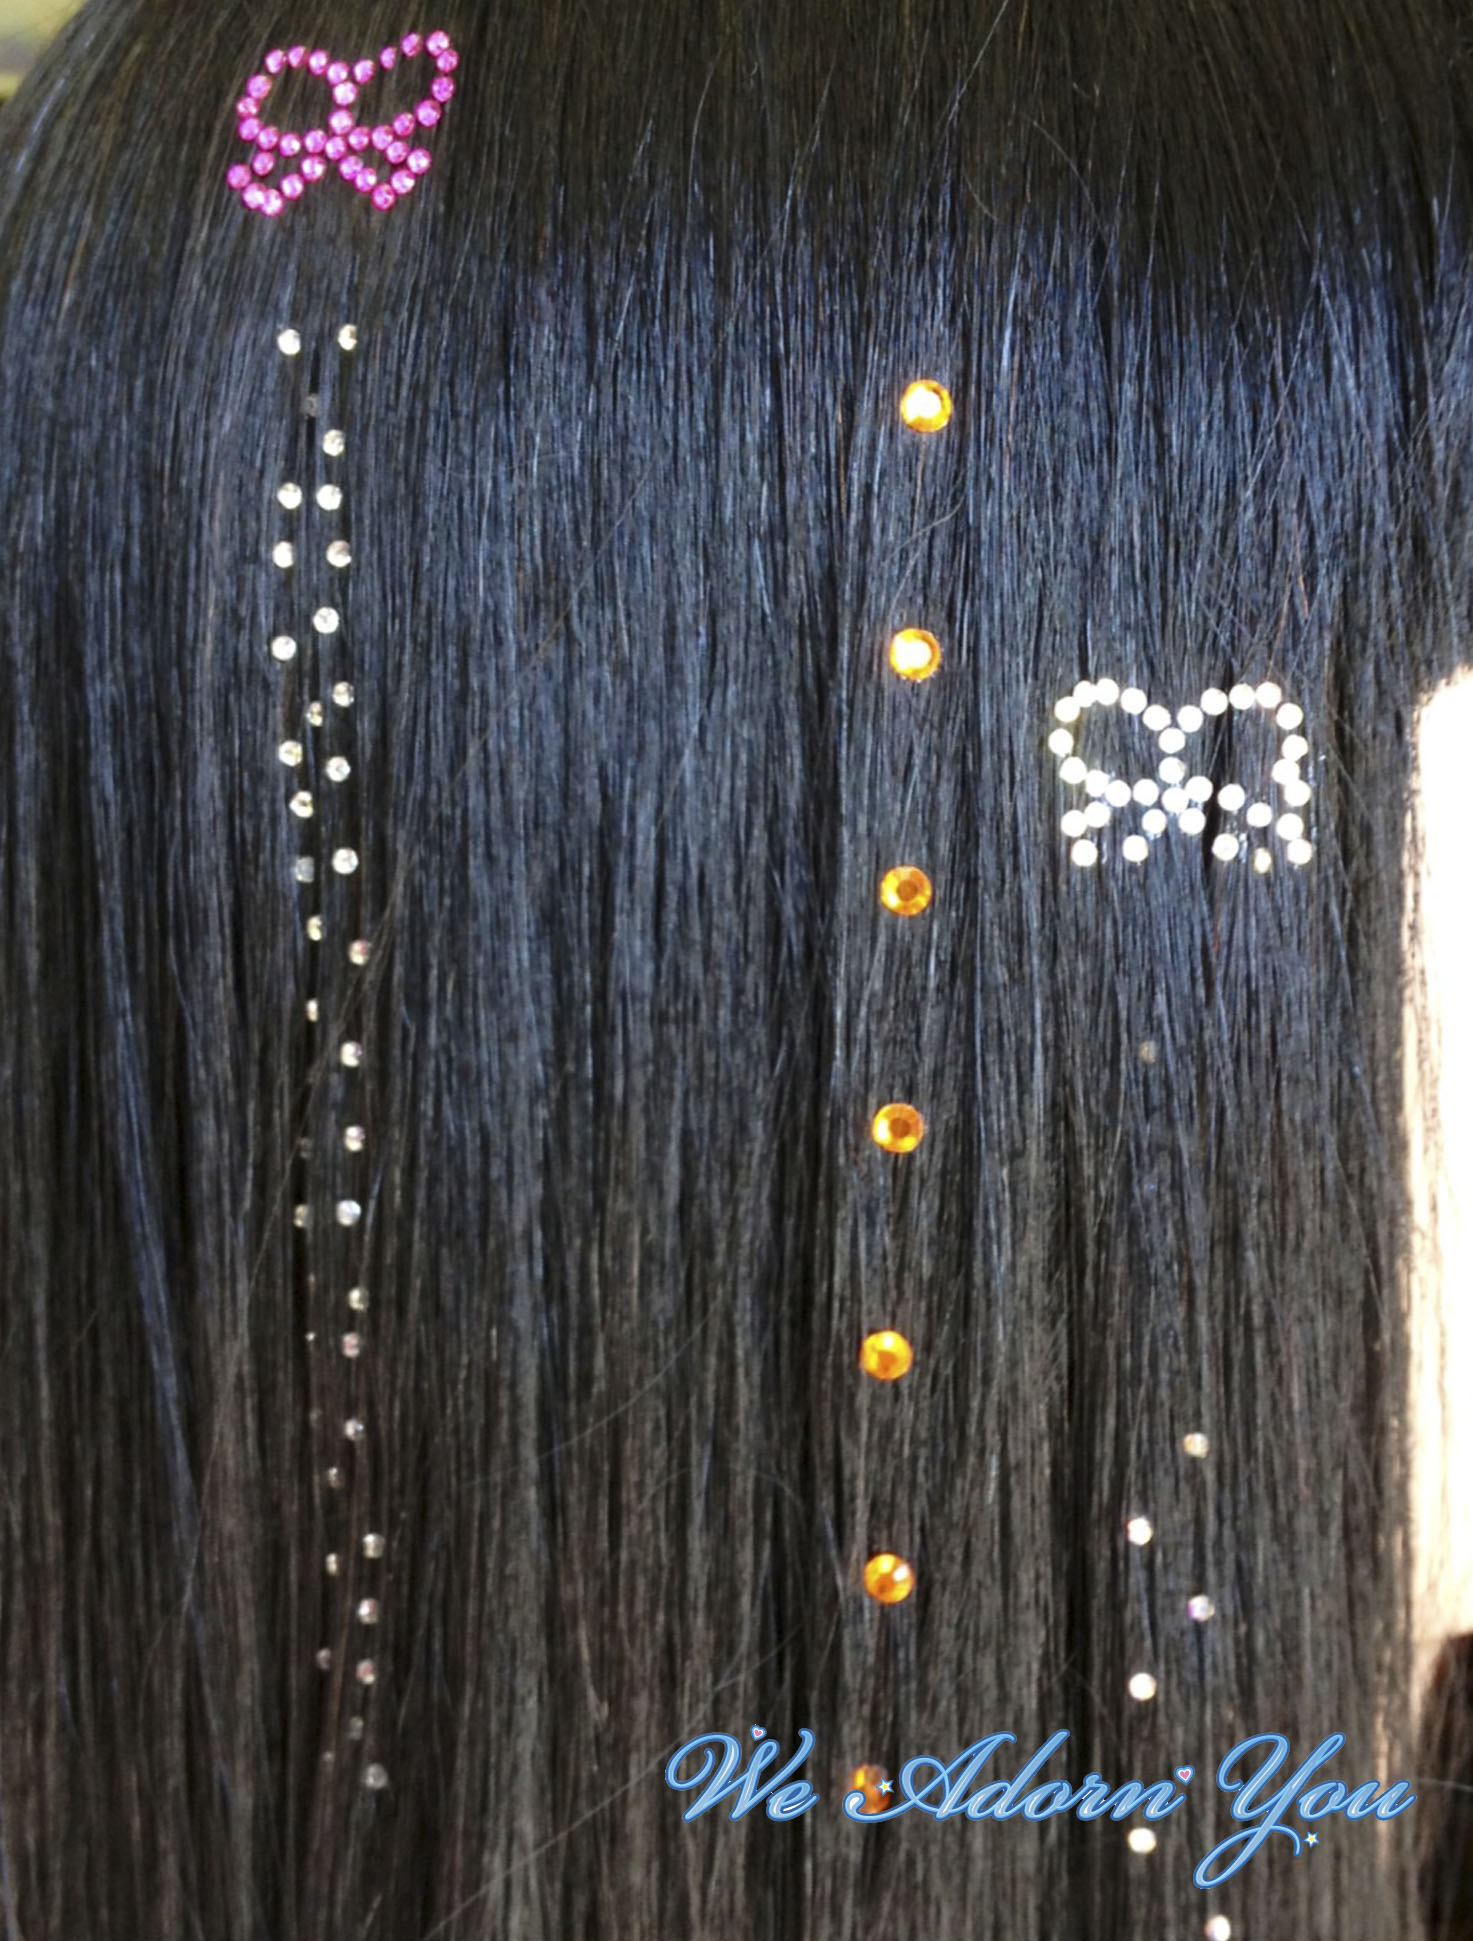 Hair Crystal Bow- We Adorn You.jpg